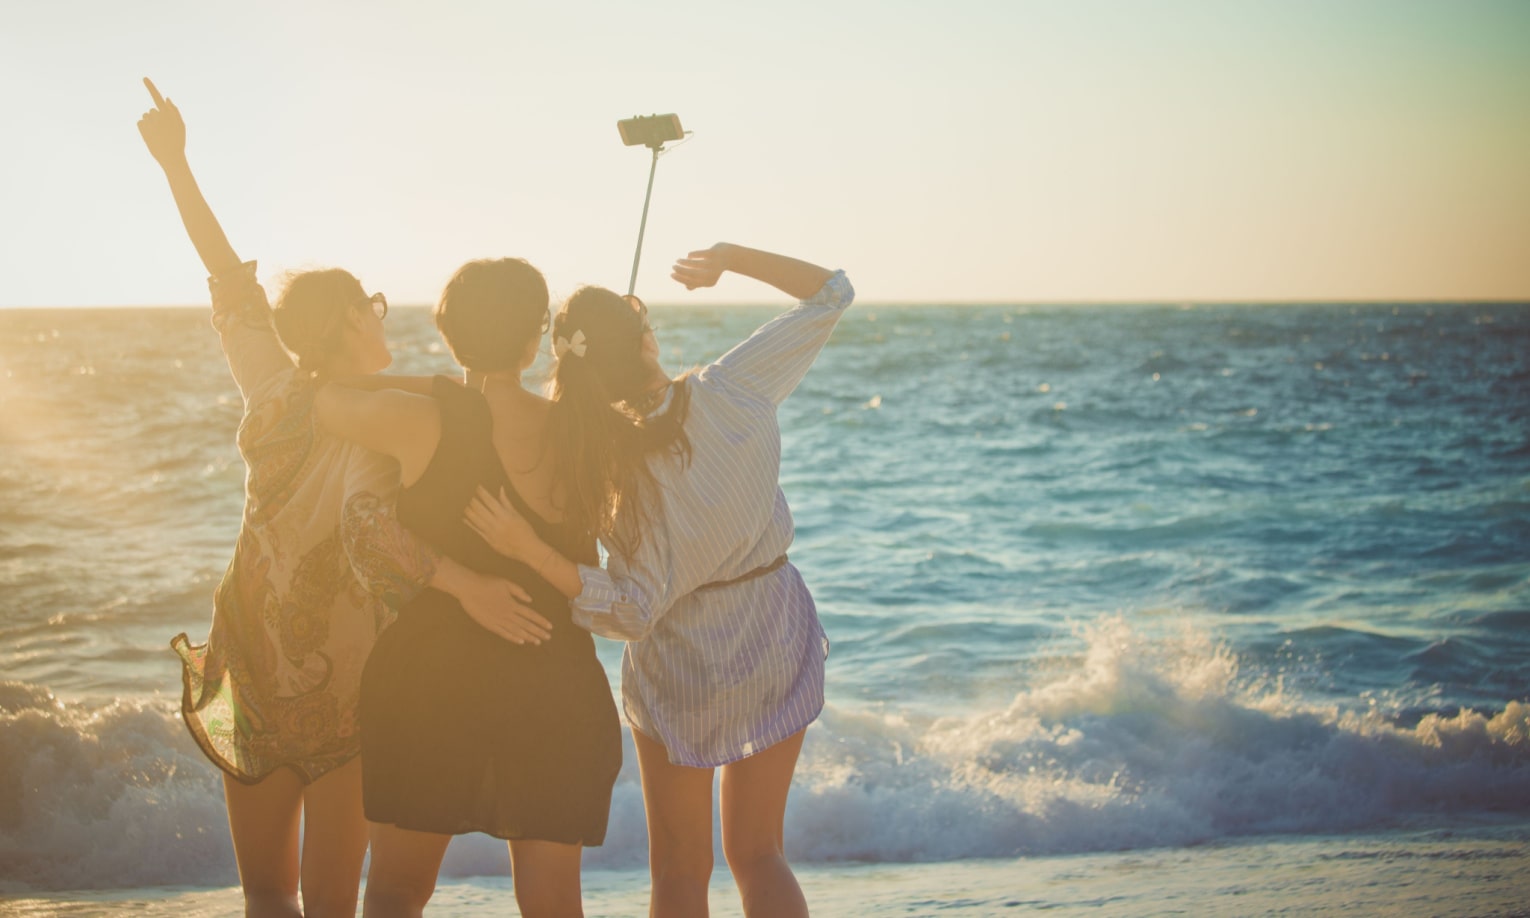  tüdrukud mere ääres selfie-pulgaga pilte tegemas